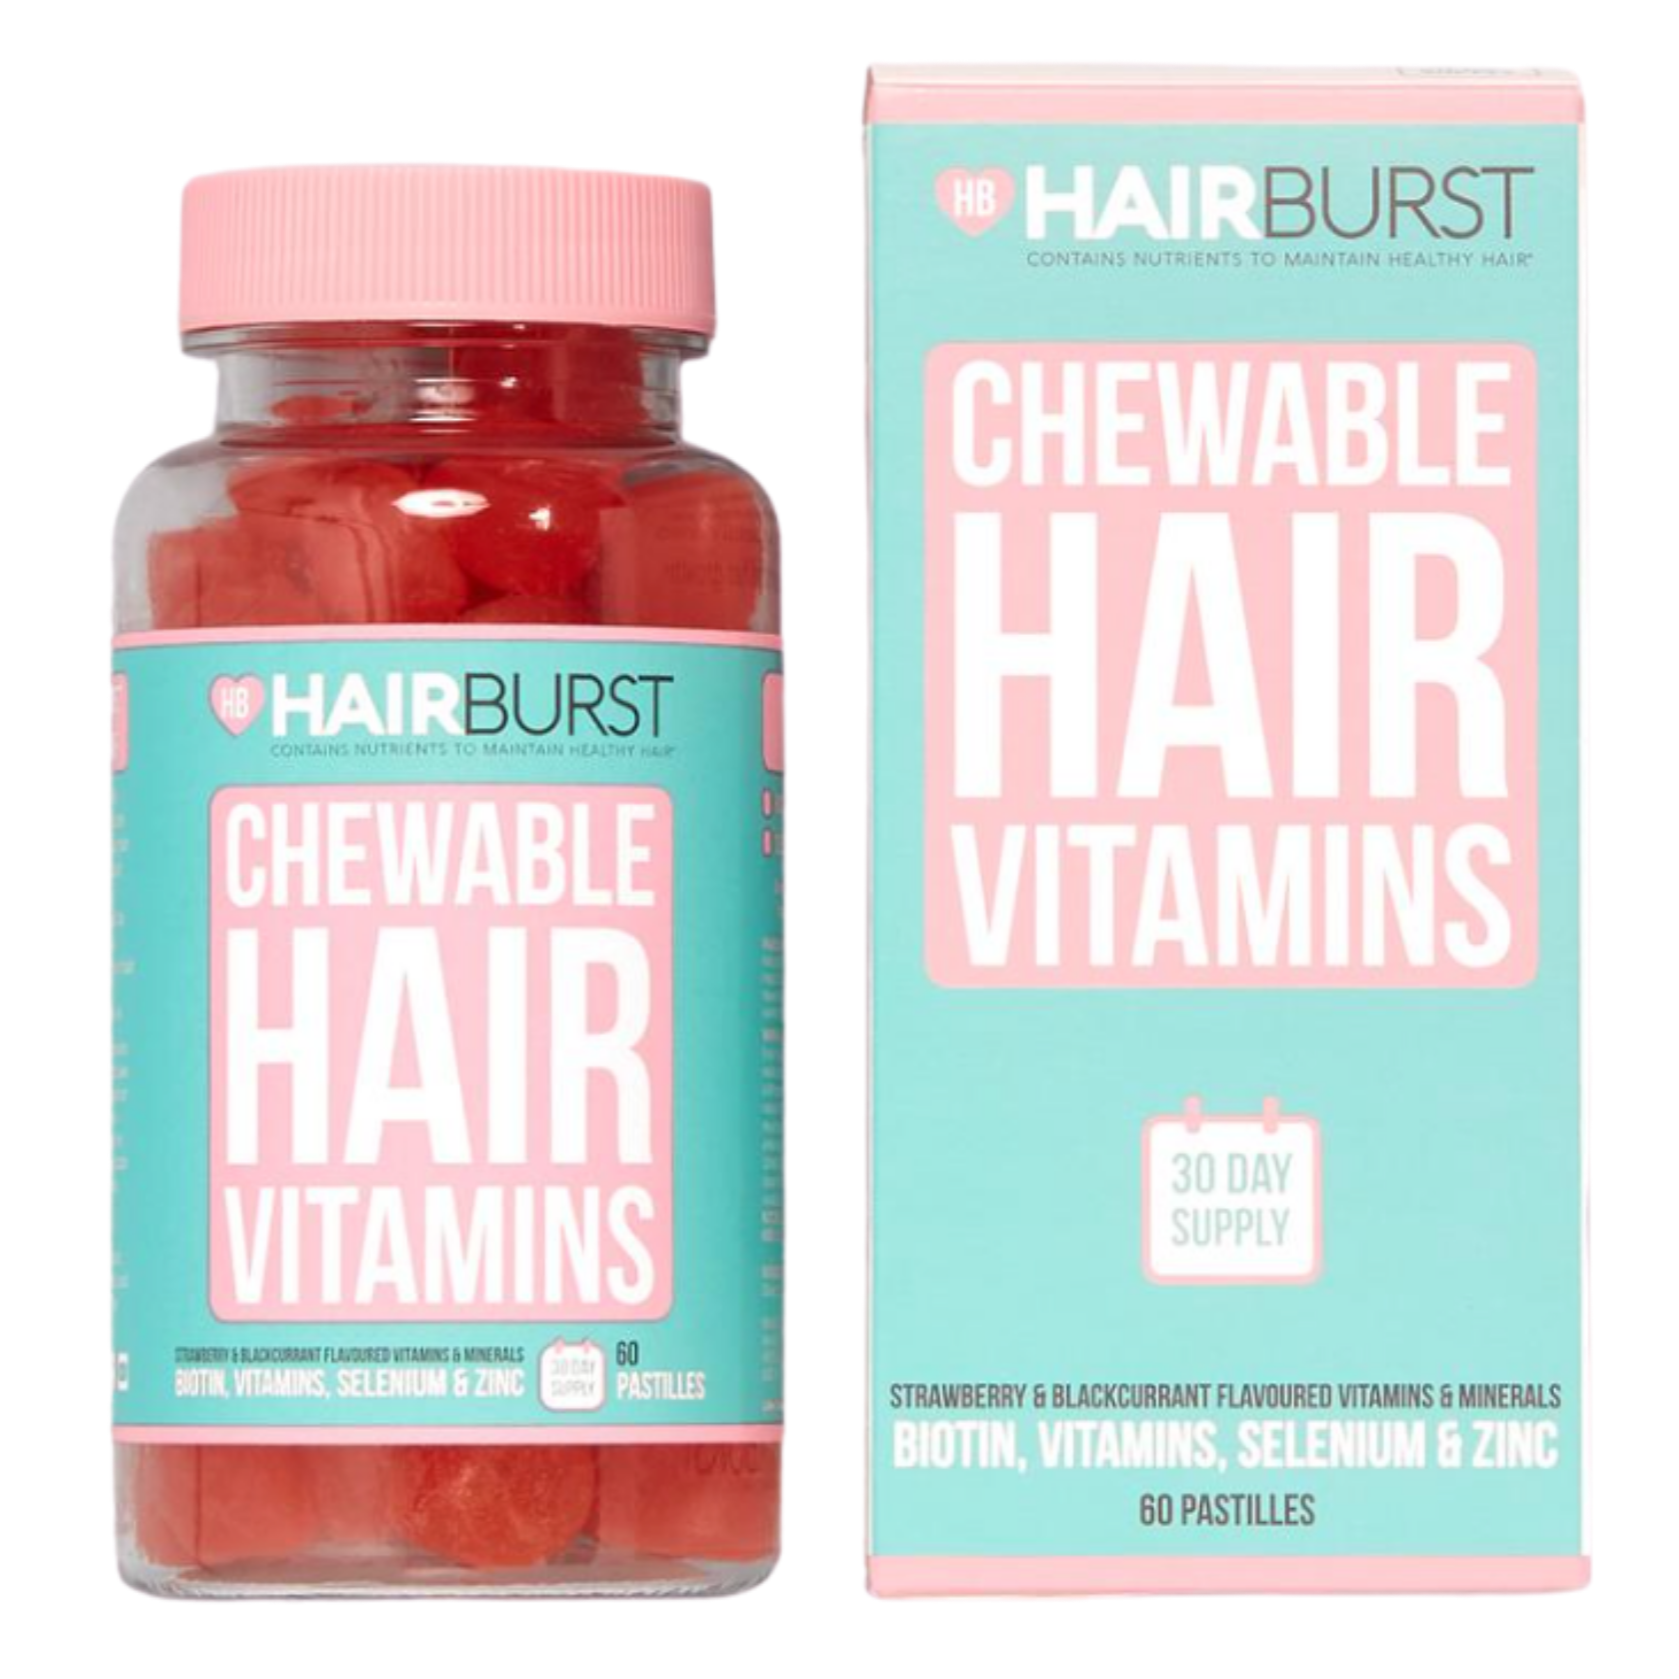 HAIRBURST Chewable Hair Vitamins